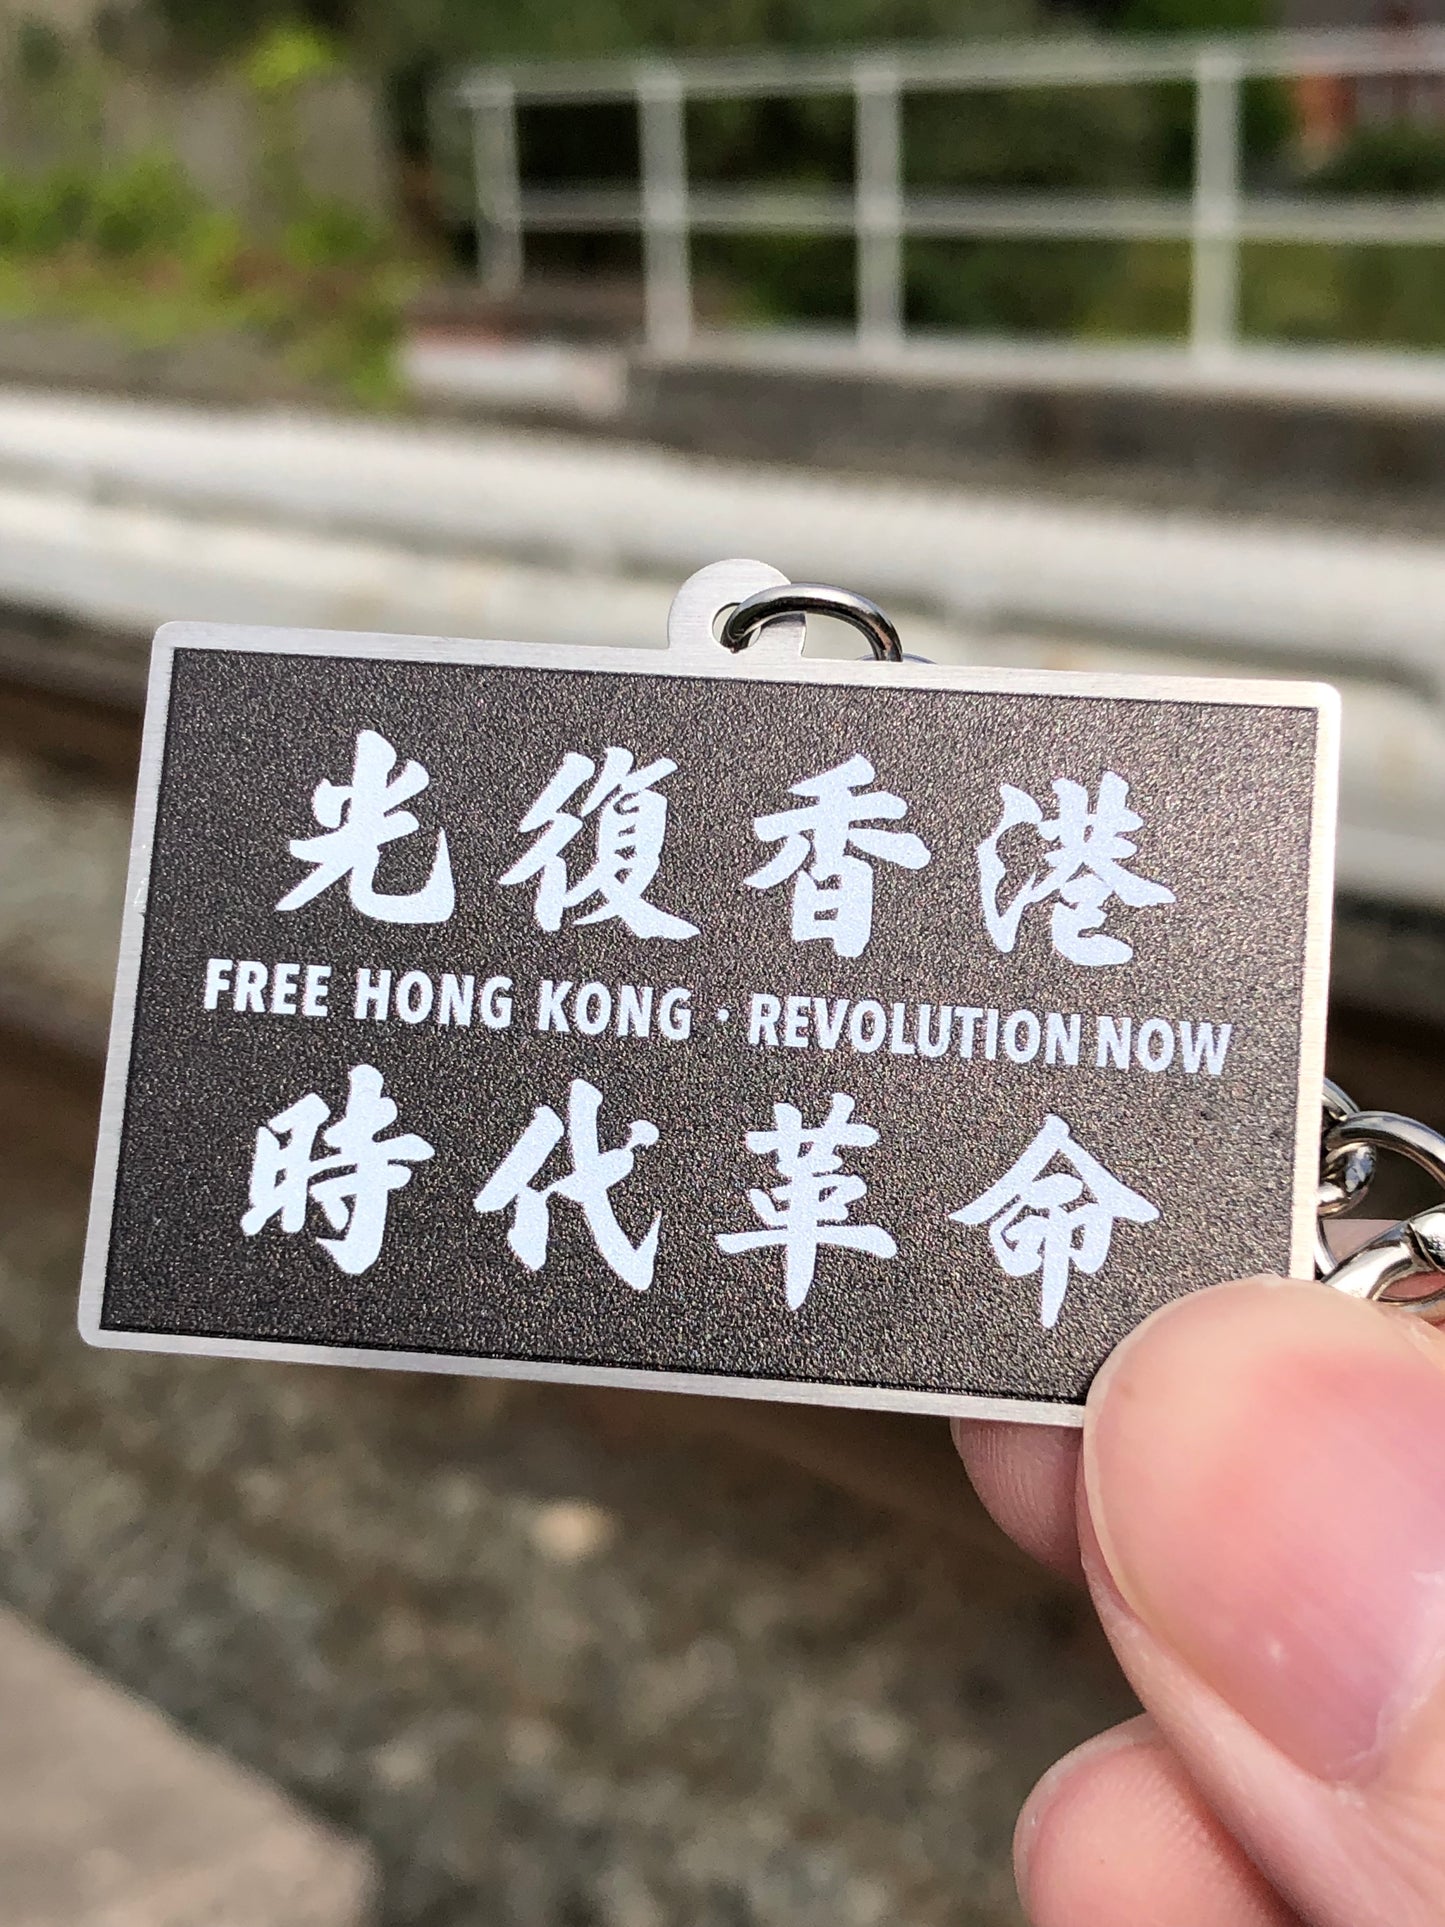 光復香港 時代革命 金屬匙扣 🇬🇧 Made in Britain